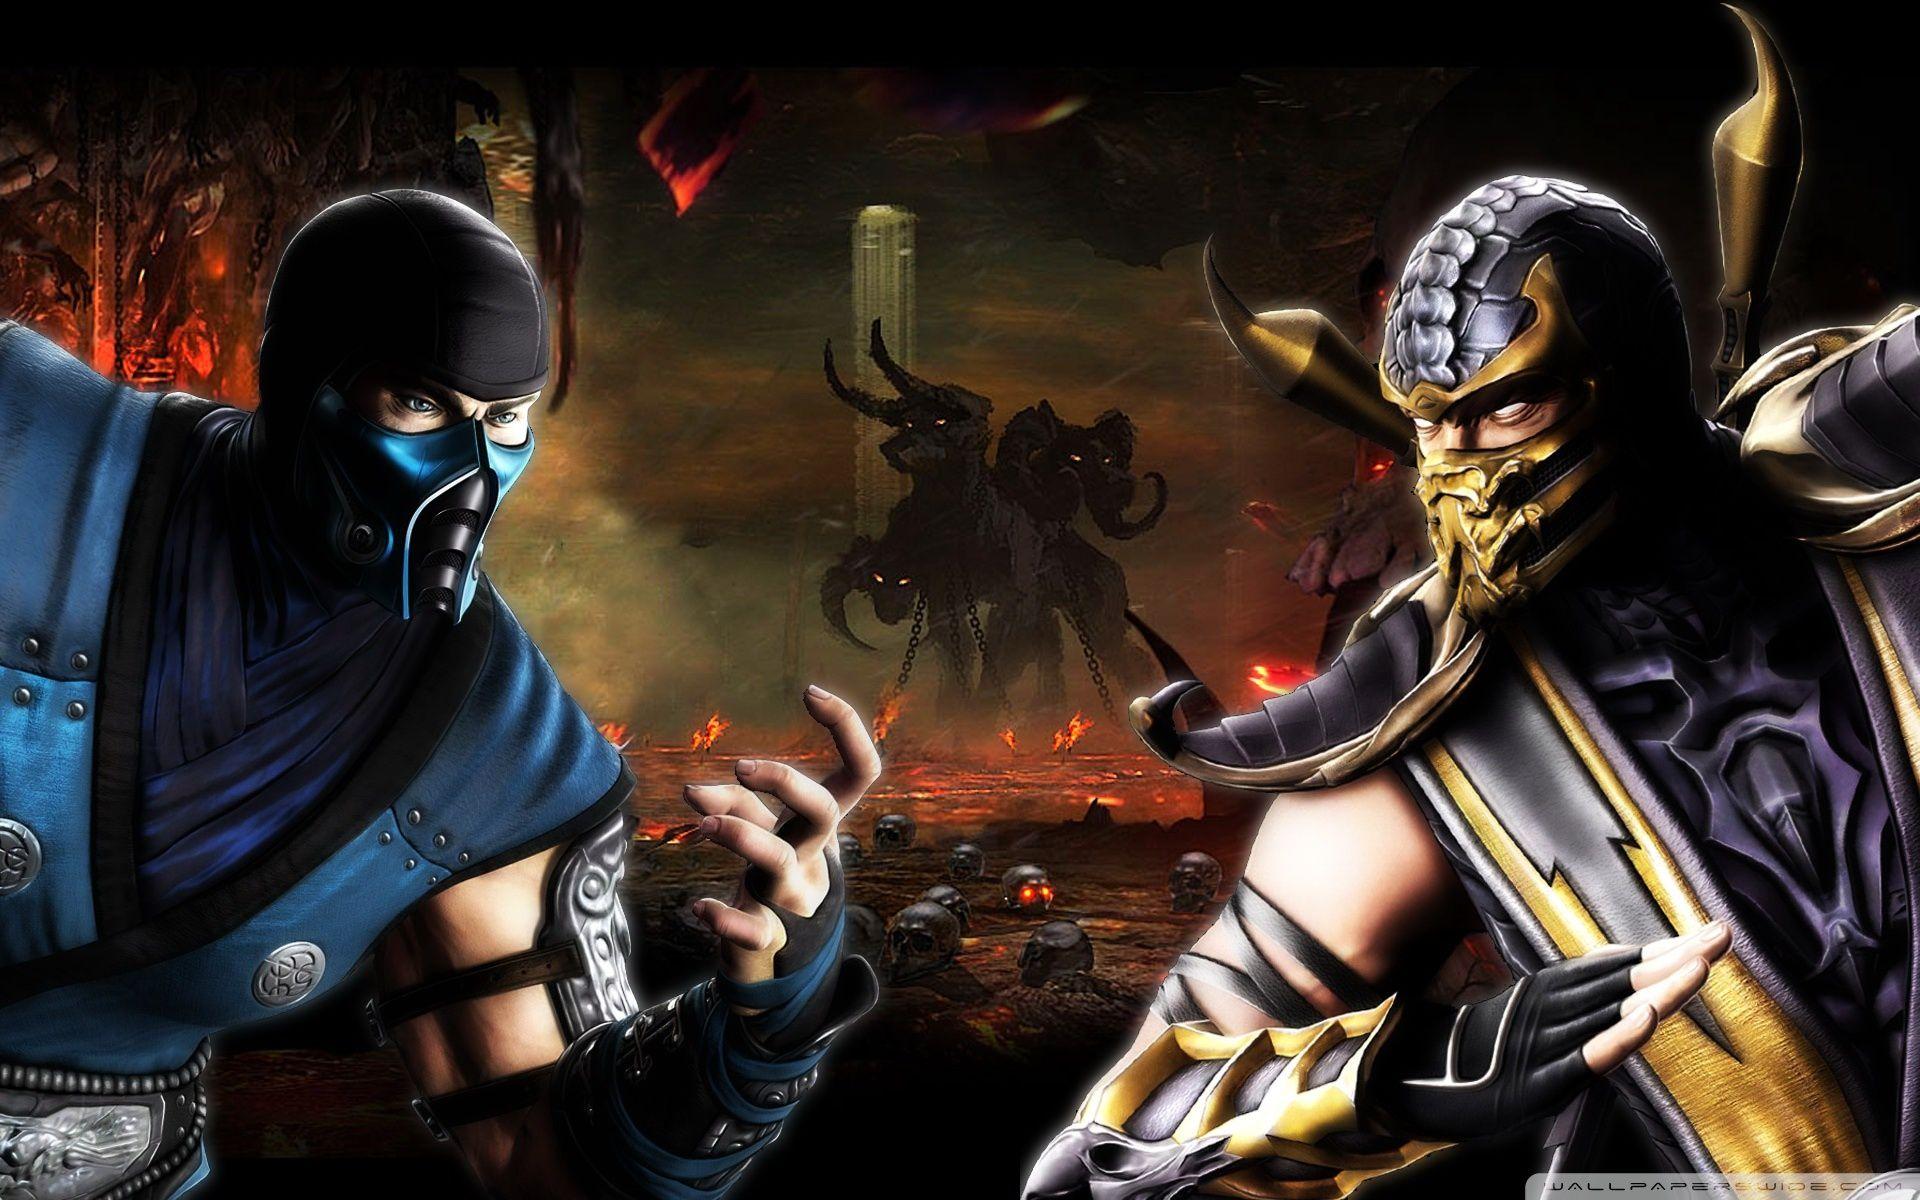 Мортал комбат пародия. Scorpion vs sub Zero MK 11. Mortal Kombat 9 саб Зиро. Скорпион против саб Зиро. Сабзиро мортал комбат.